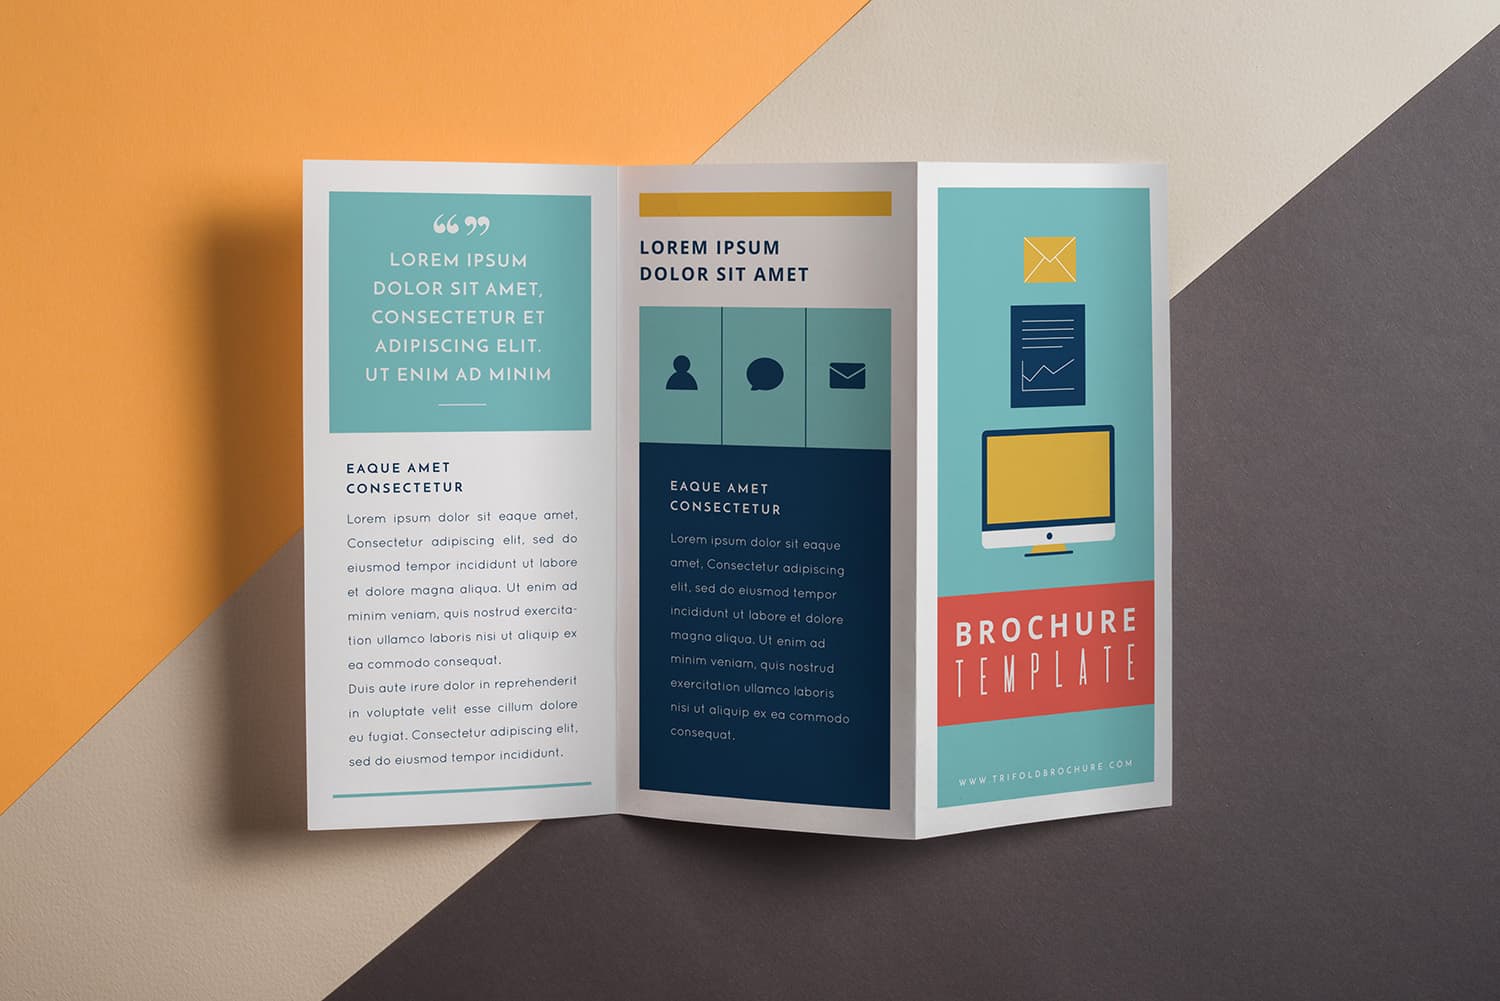 Brochure là gì? Khái niệm tổng quát về brochure cần biết